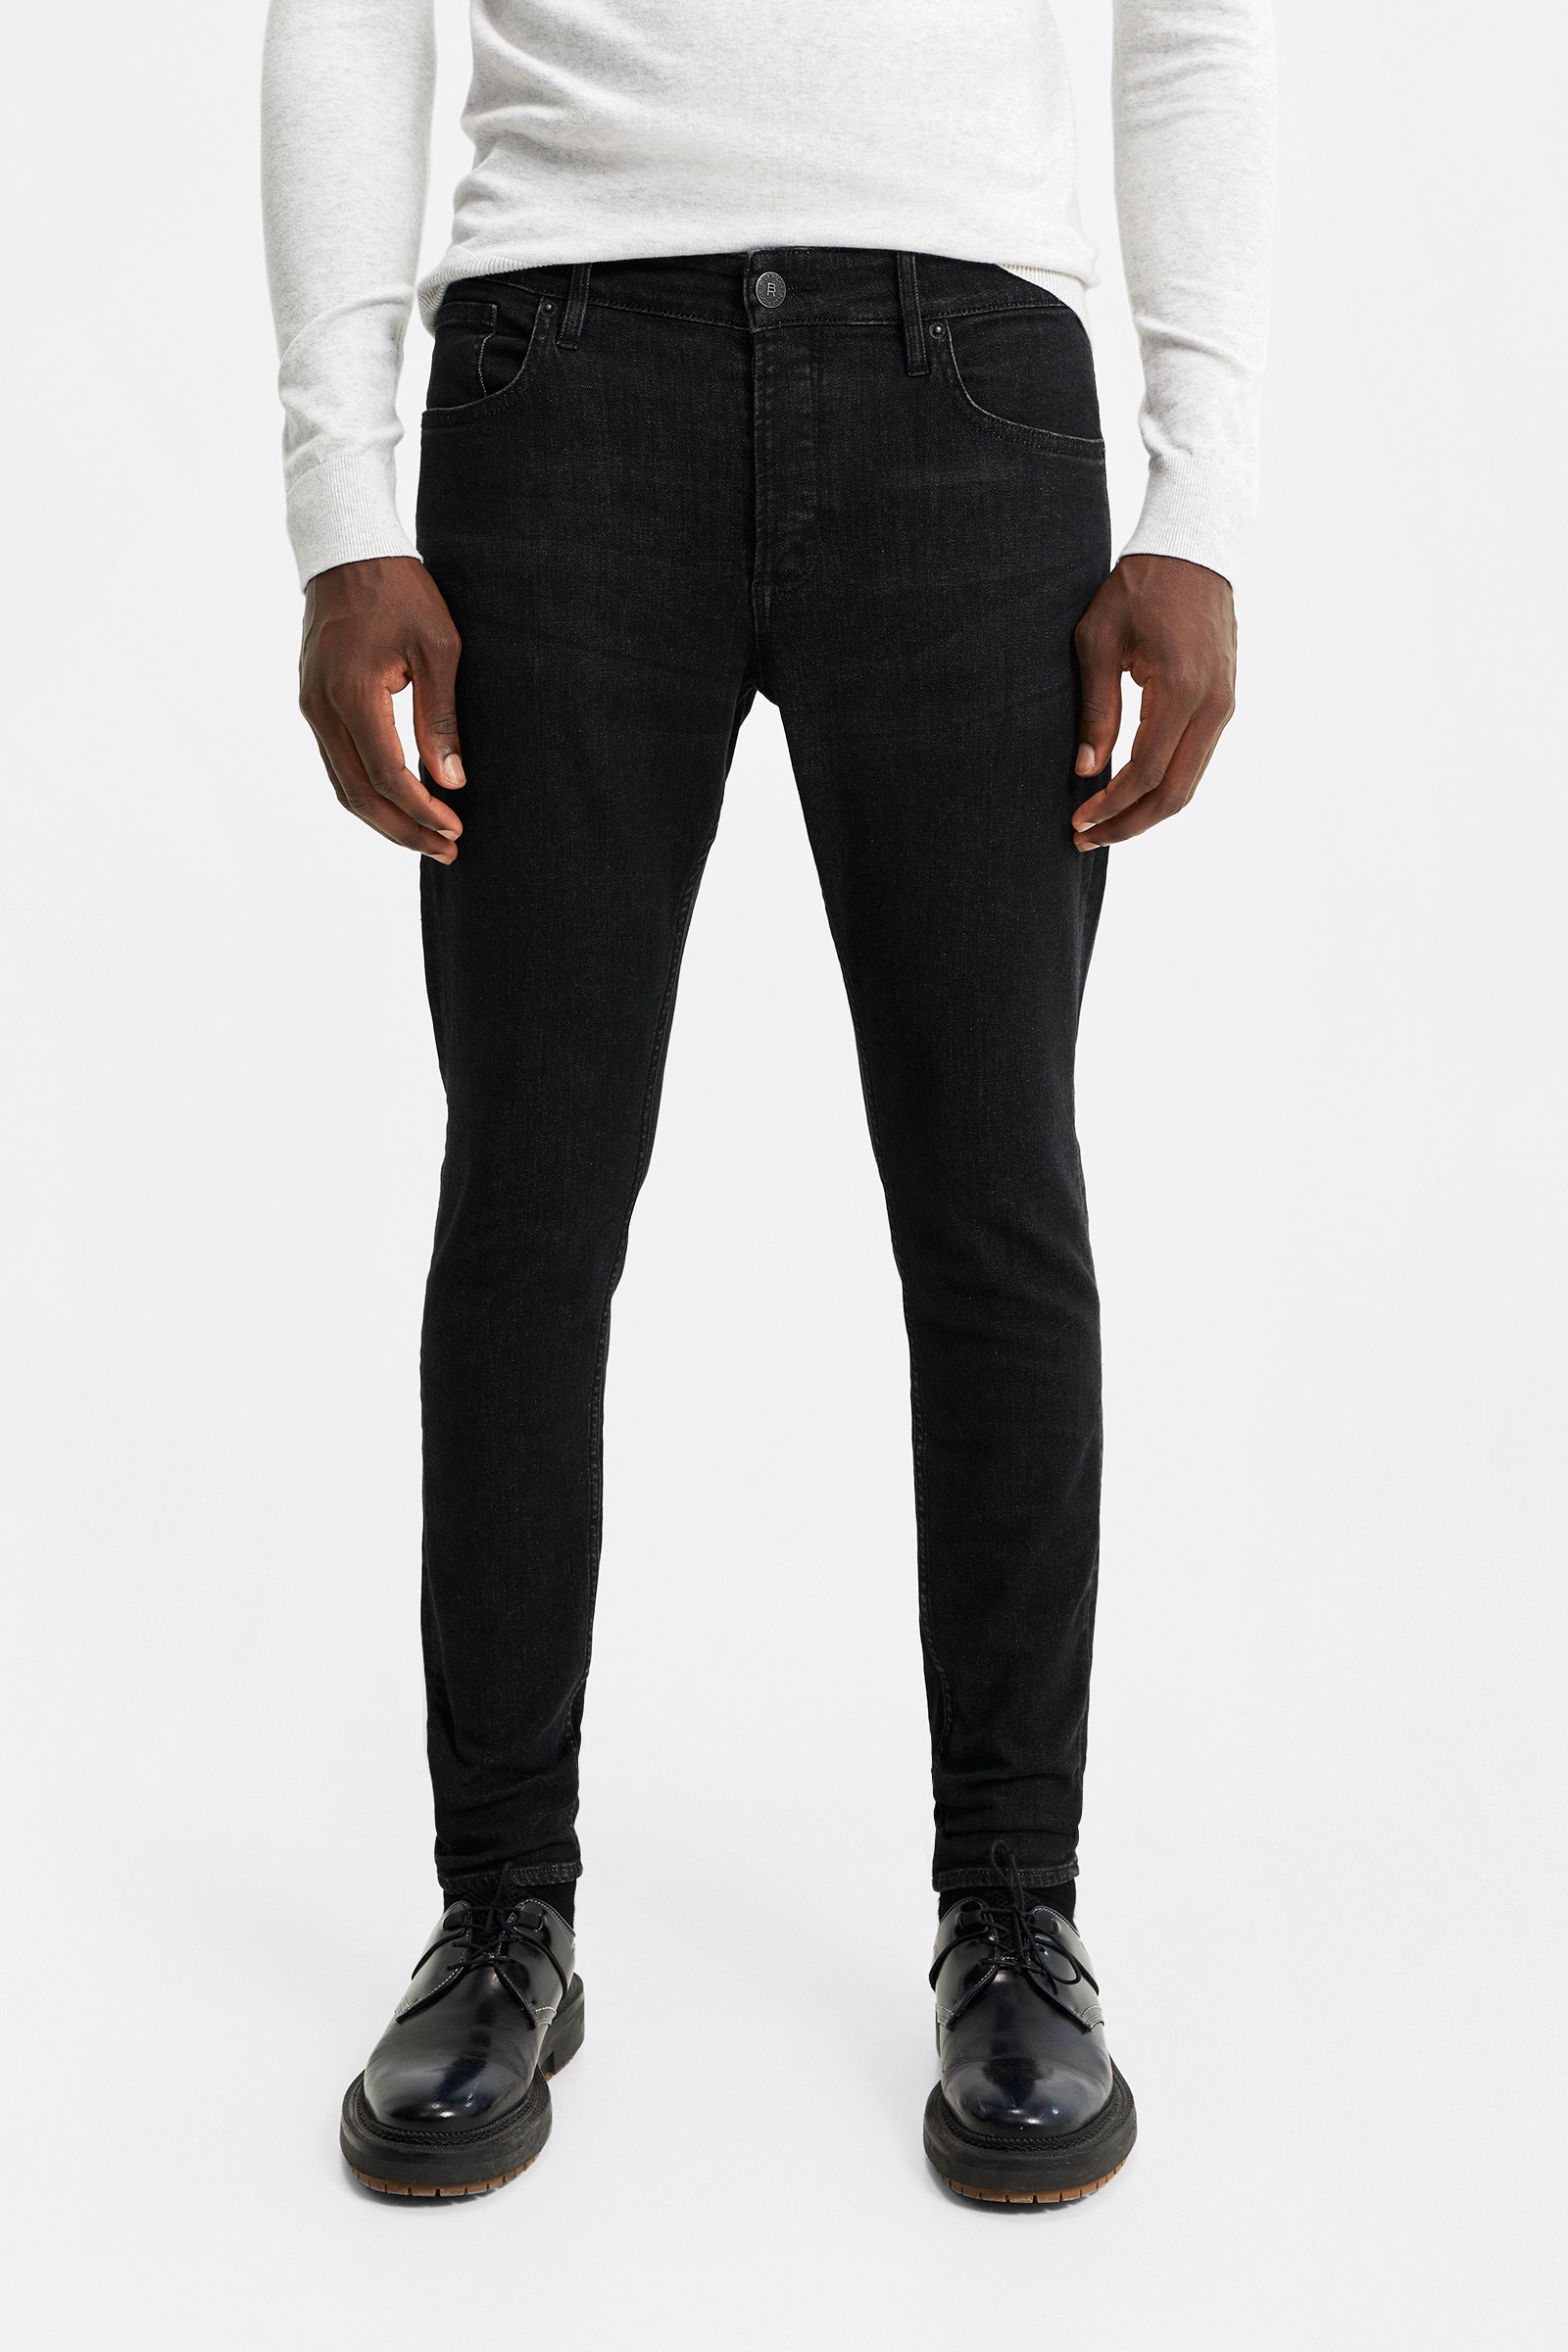 werkgelegenheid Reproduceren Bedankt Heren skinny fit jeans met comfort stretch | 94704099 - WE Fashion